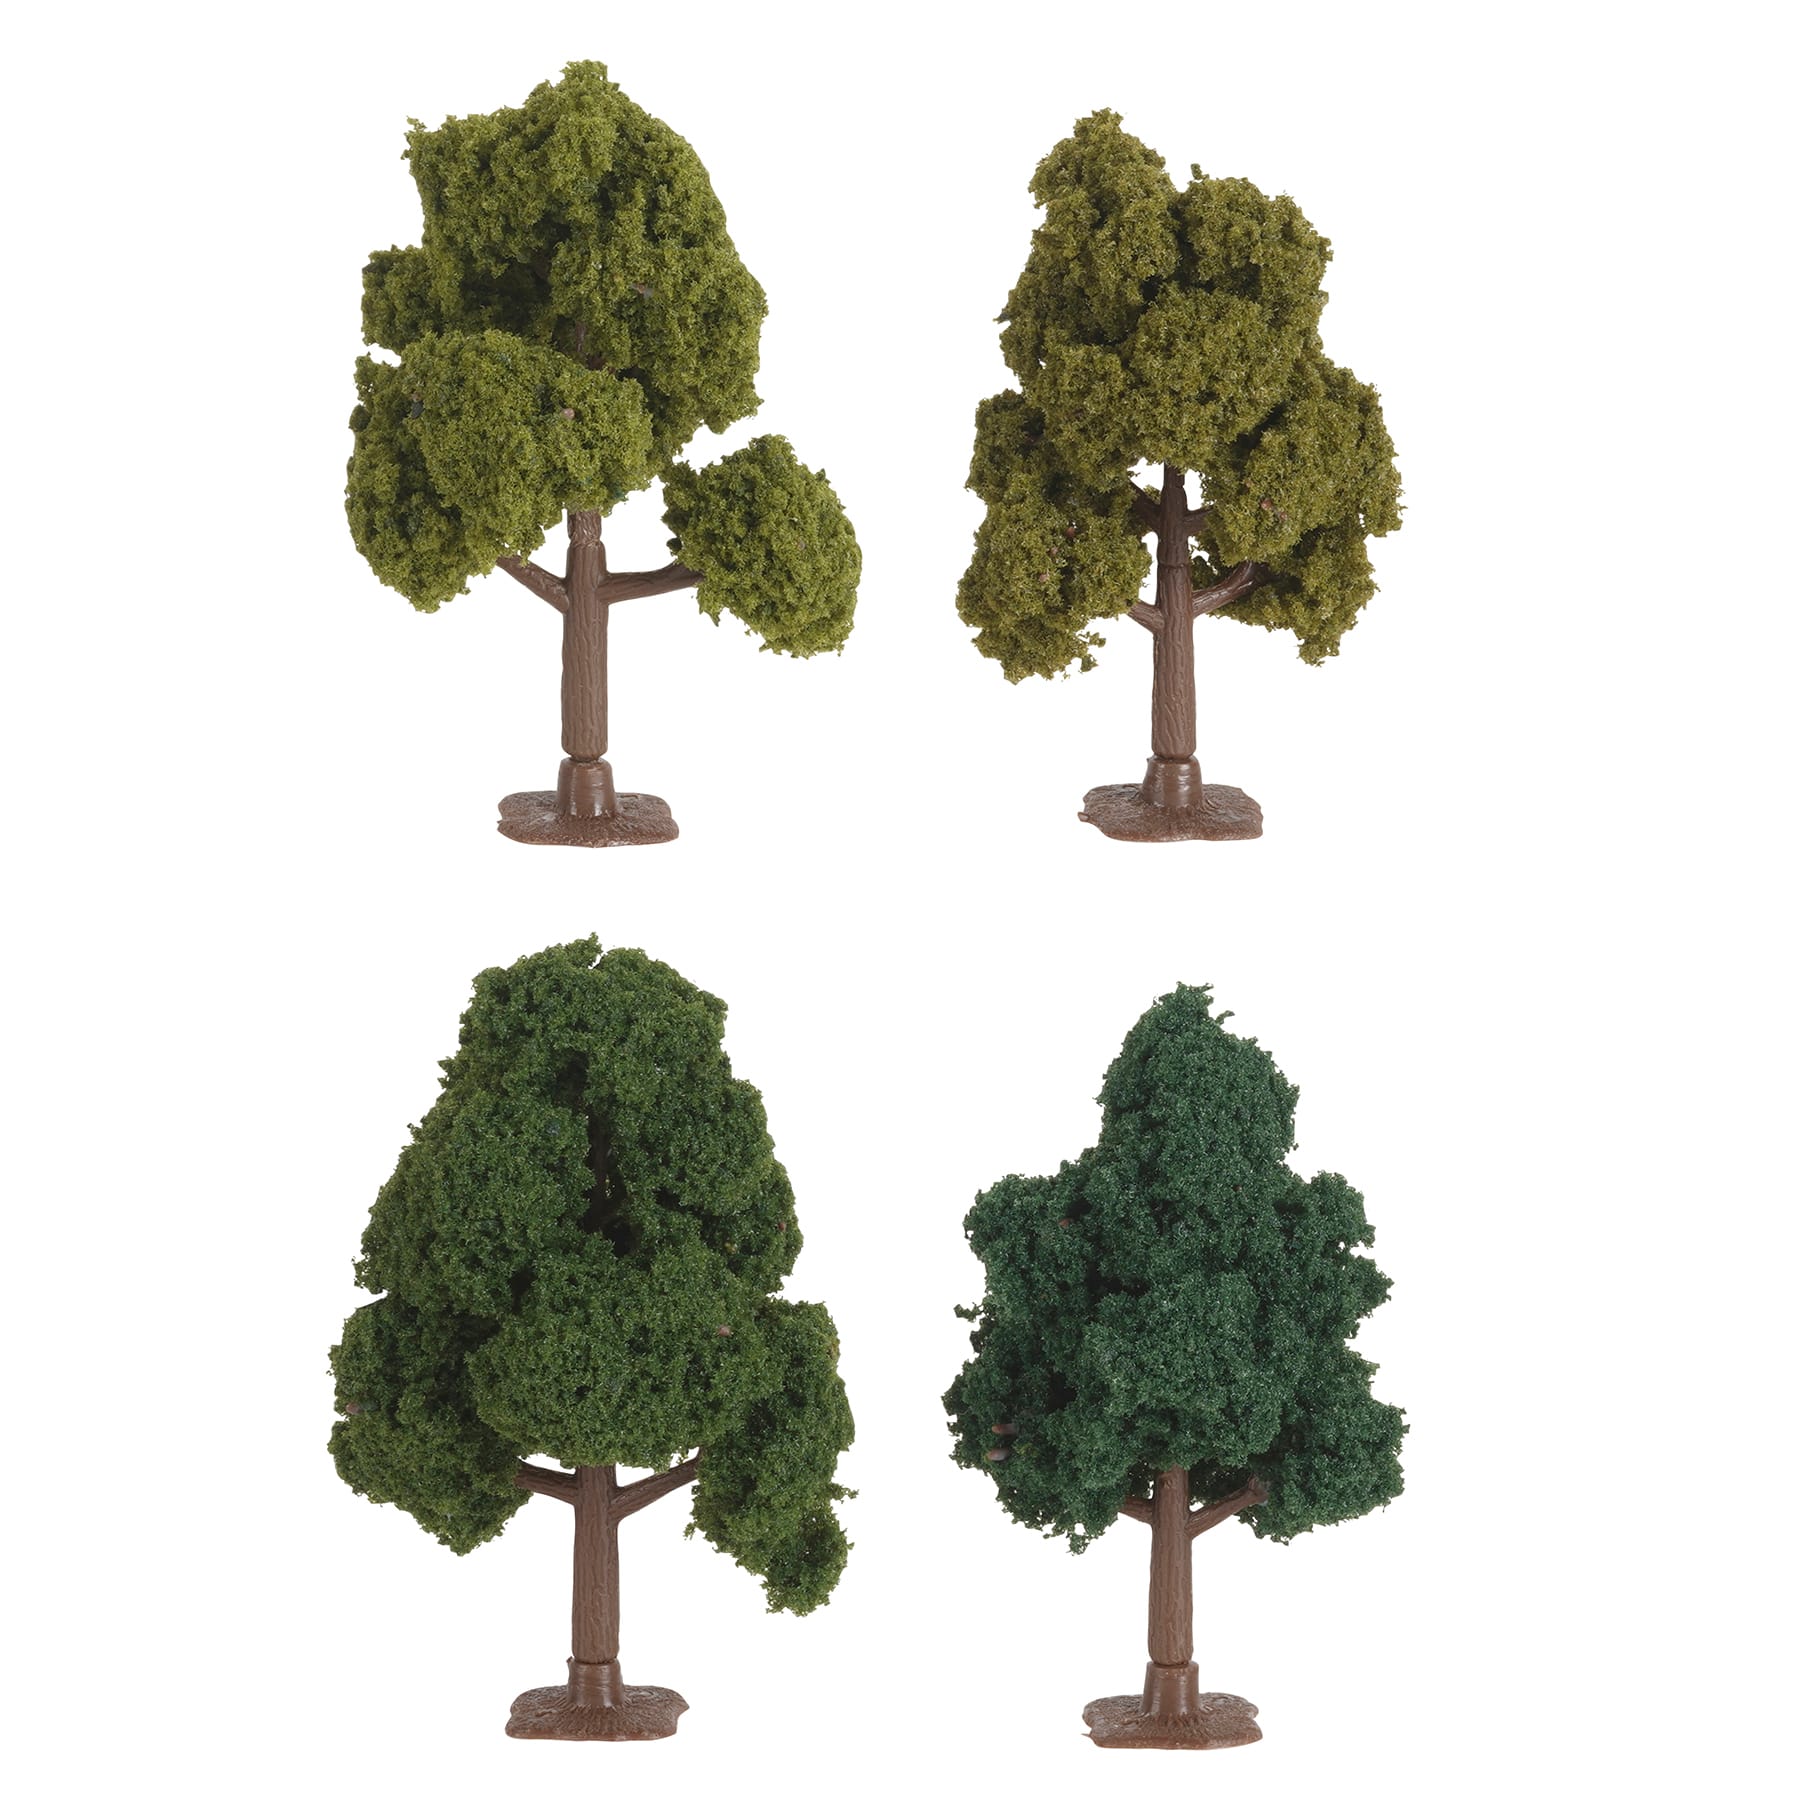 Sapin Magique (Little tree) - 1/24 ou 1/18 – Mac Modelisme